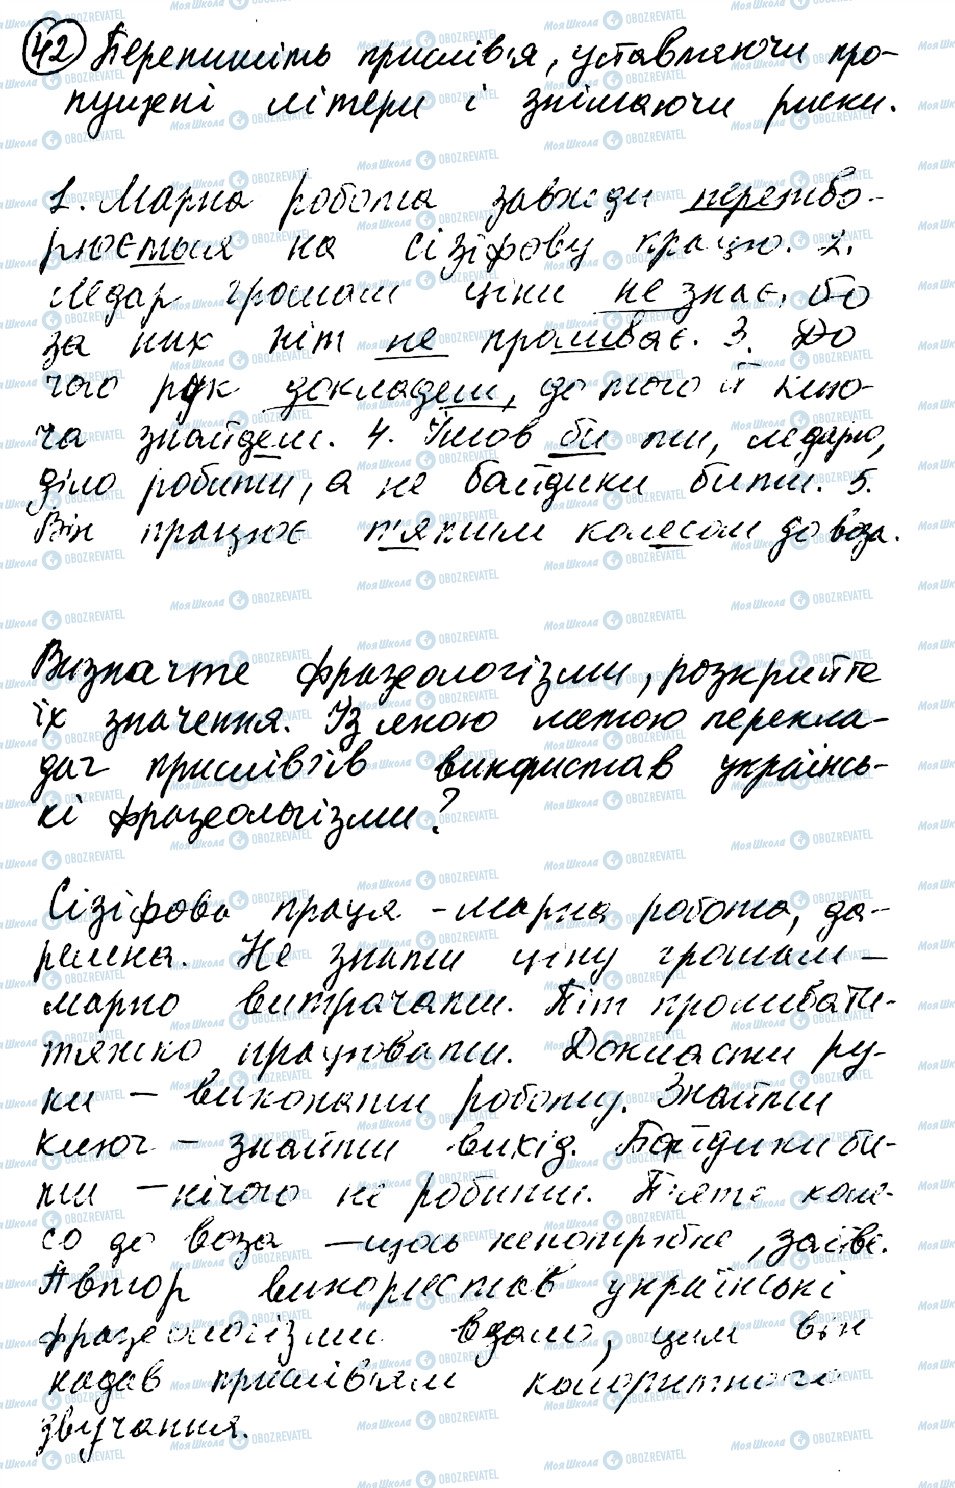 ГДЗ Українська мова 8 клас сторінка 42